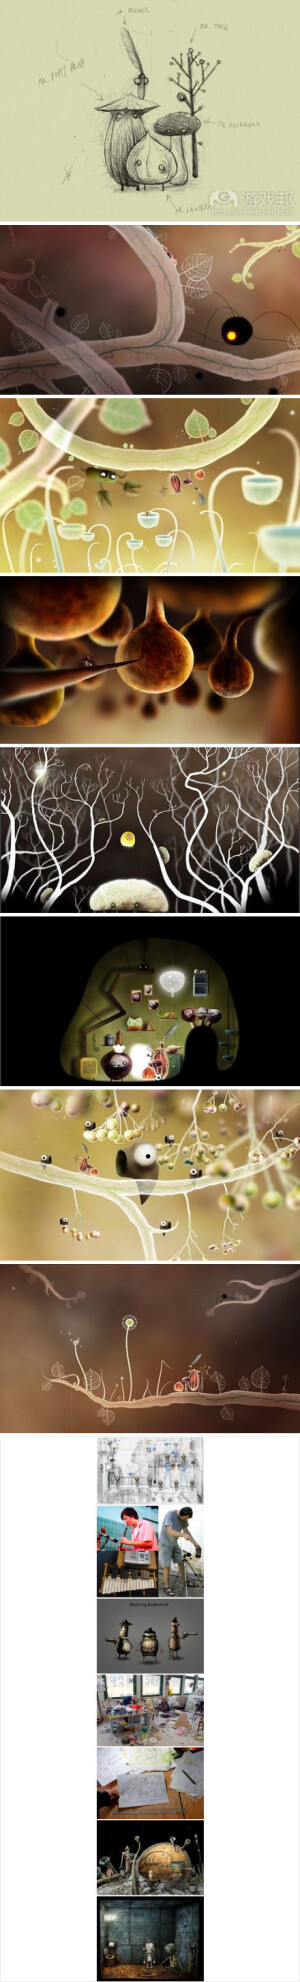 【关注Machinarium（机械迷城）作者新产品构思Botanicula】1） http://t.cn/aFKbTo 这是预告片的视频 2）如图例所示，这可能是另外一款精雕细琢的造诣作品（华丽的色彩）3）游戏题材主要是围绕森林中的五个好友（小生物）抵御入侵拯救家族树种的最后一粒种子的故事……